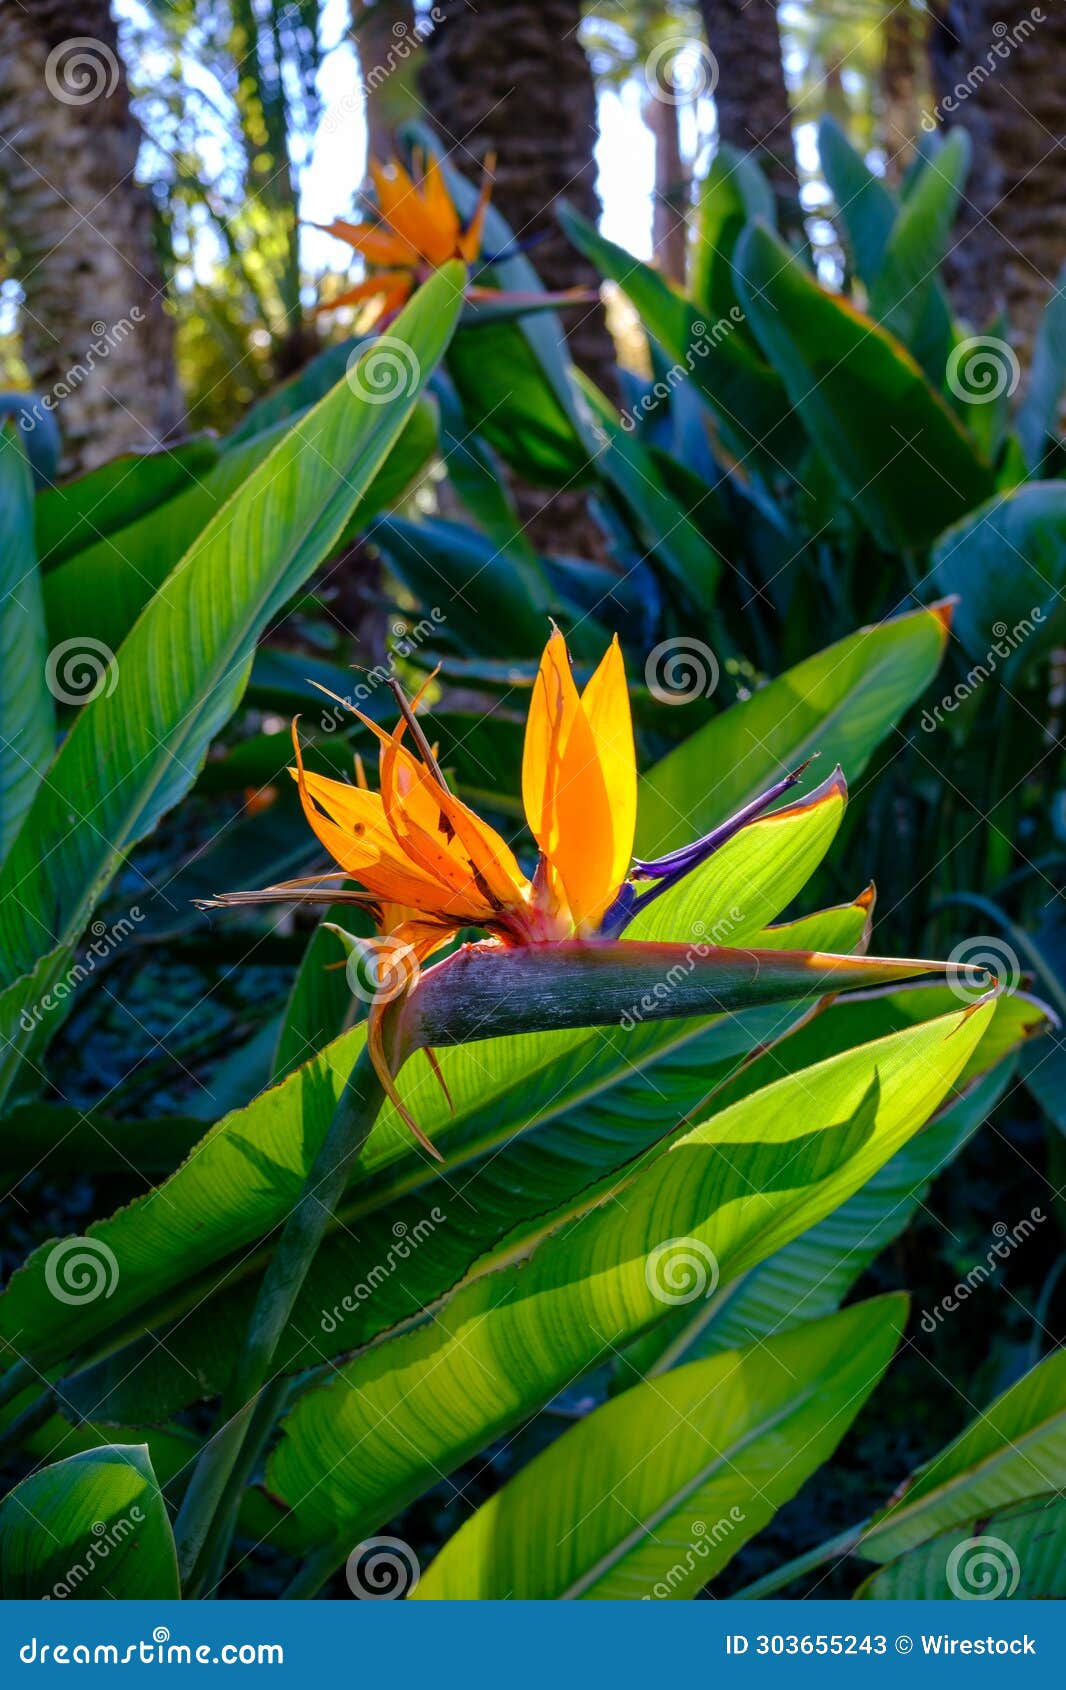 vibrant close-up of a strelitzia flower in the garden "el huerto del cura" located in elche, spain